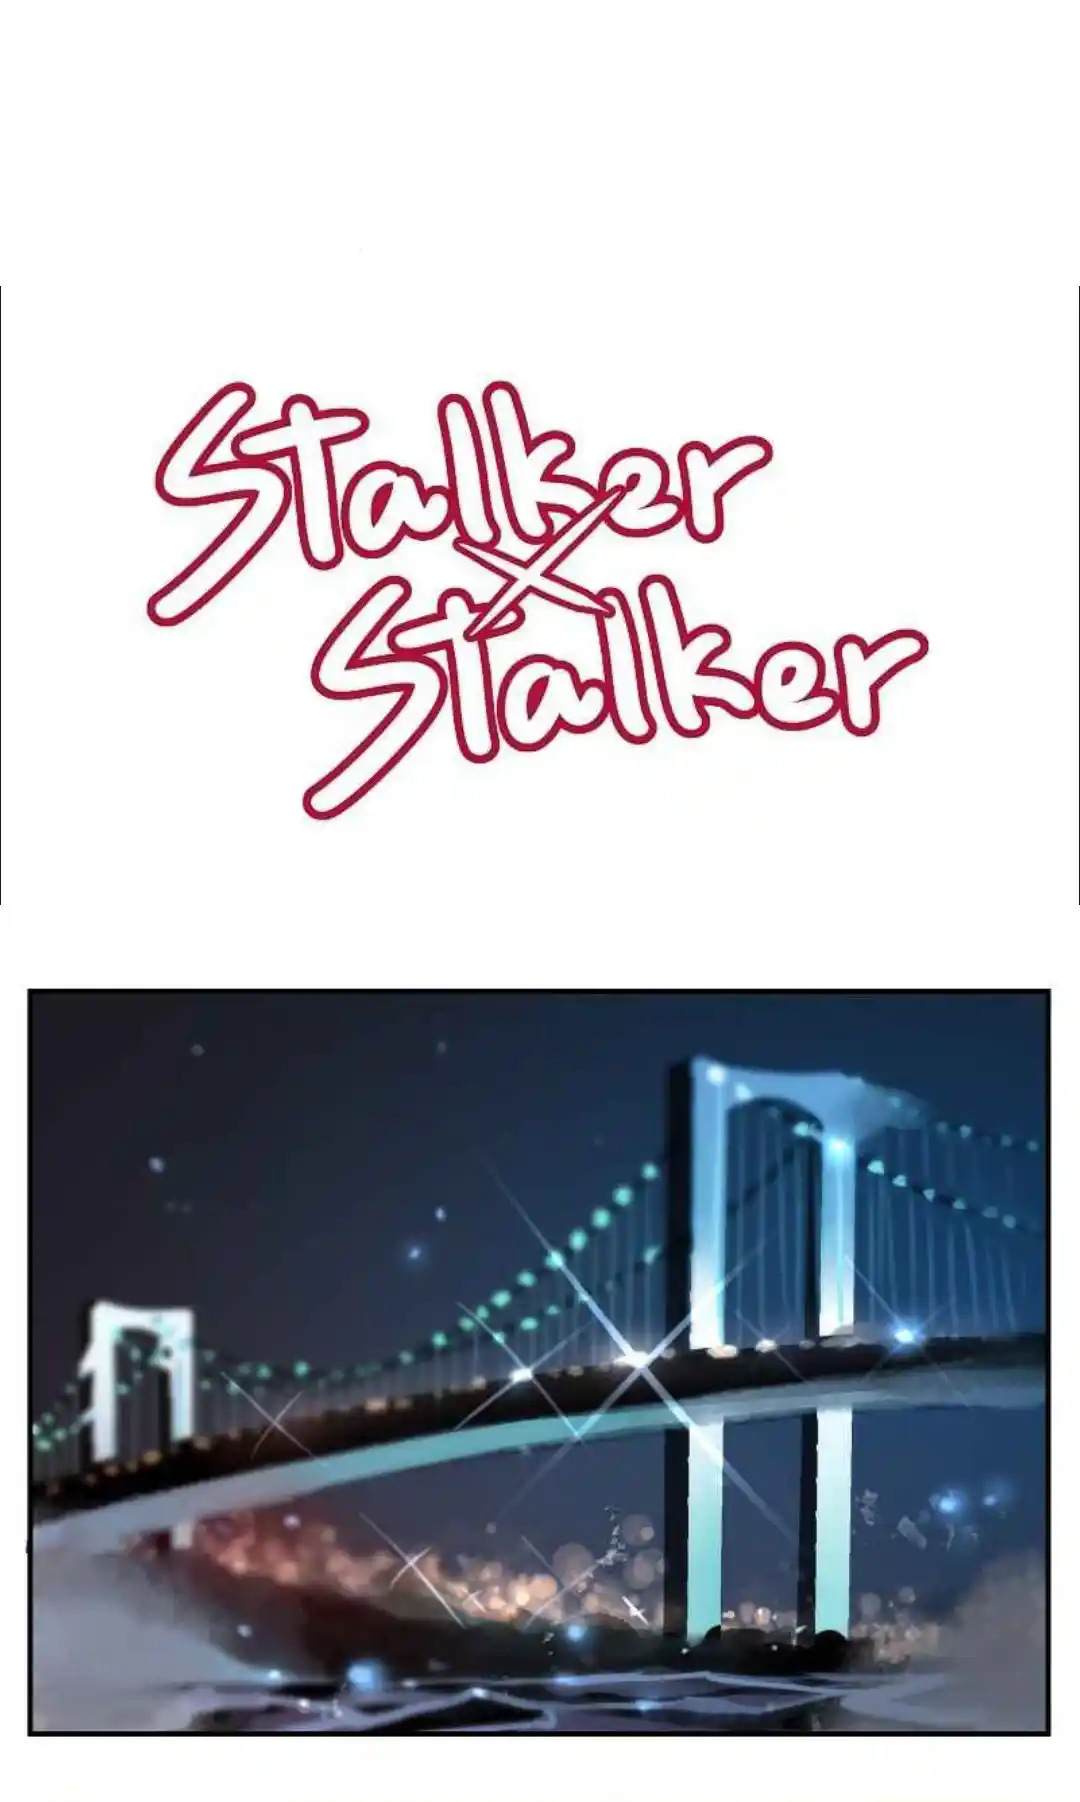 Stalker X Stalker: Chapter 85 - Page 1